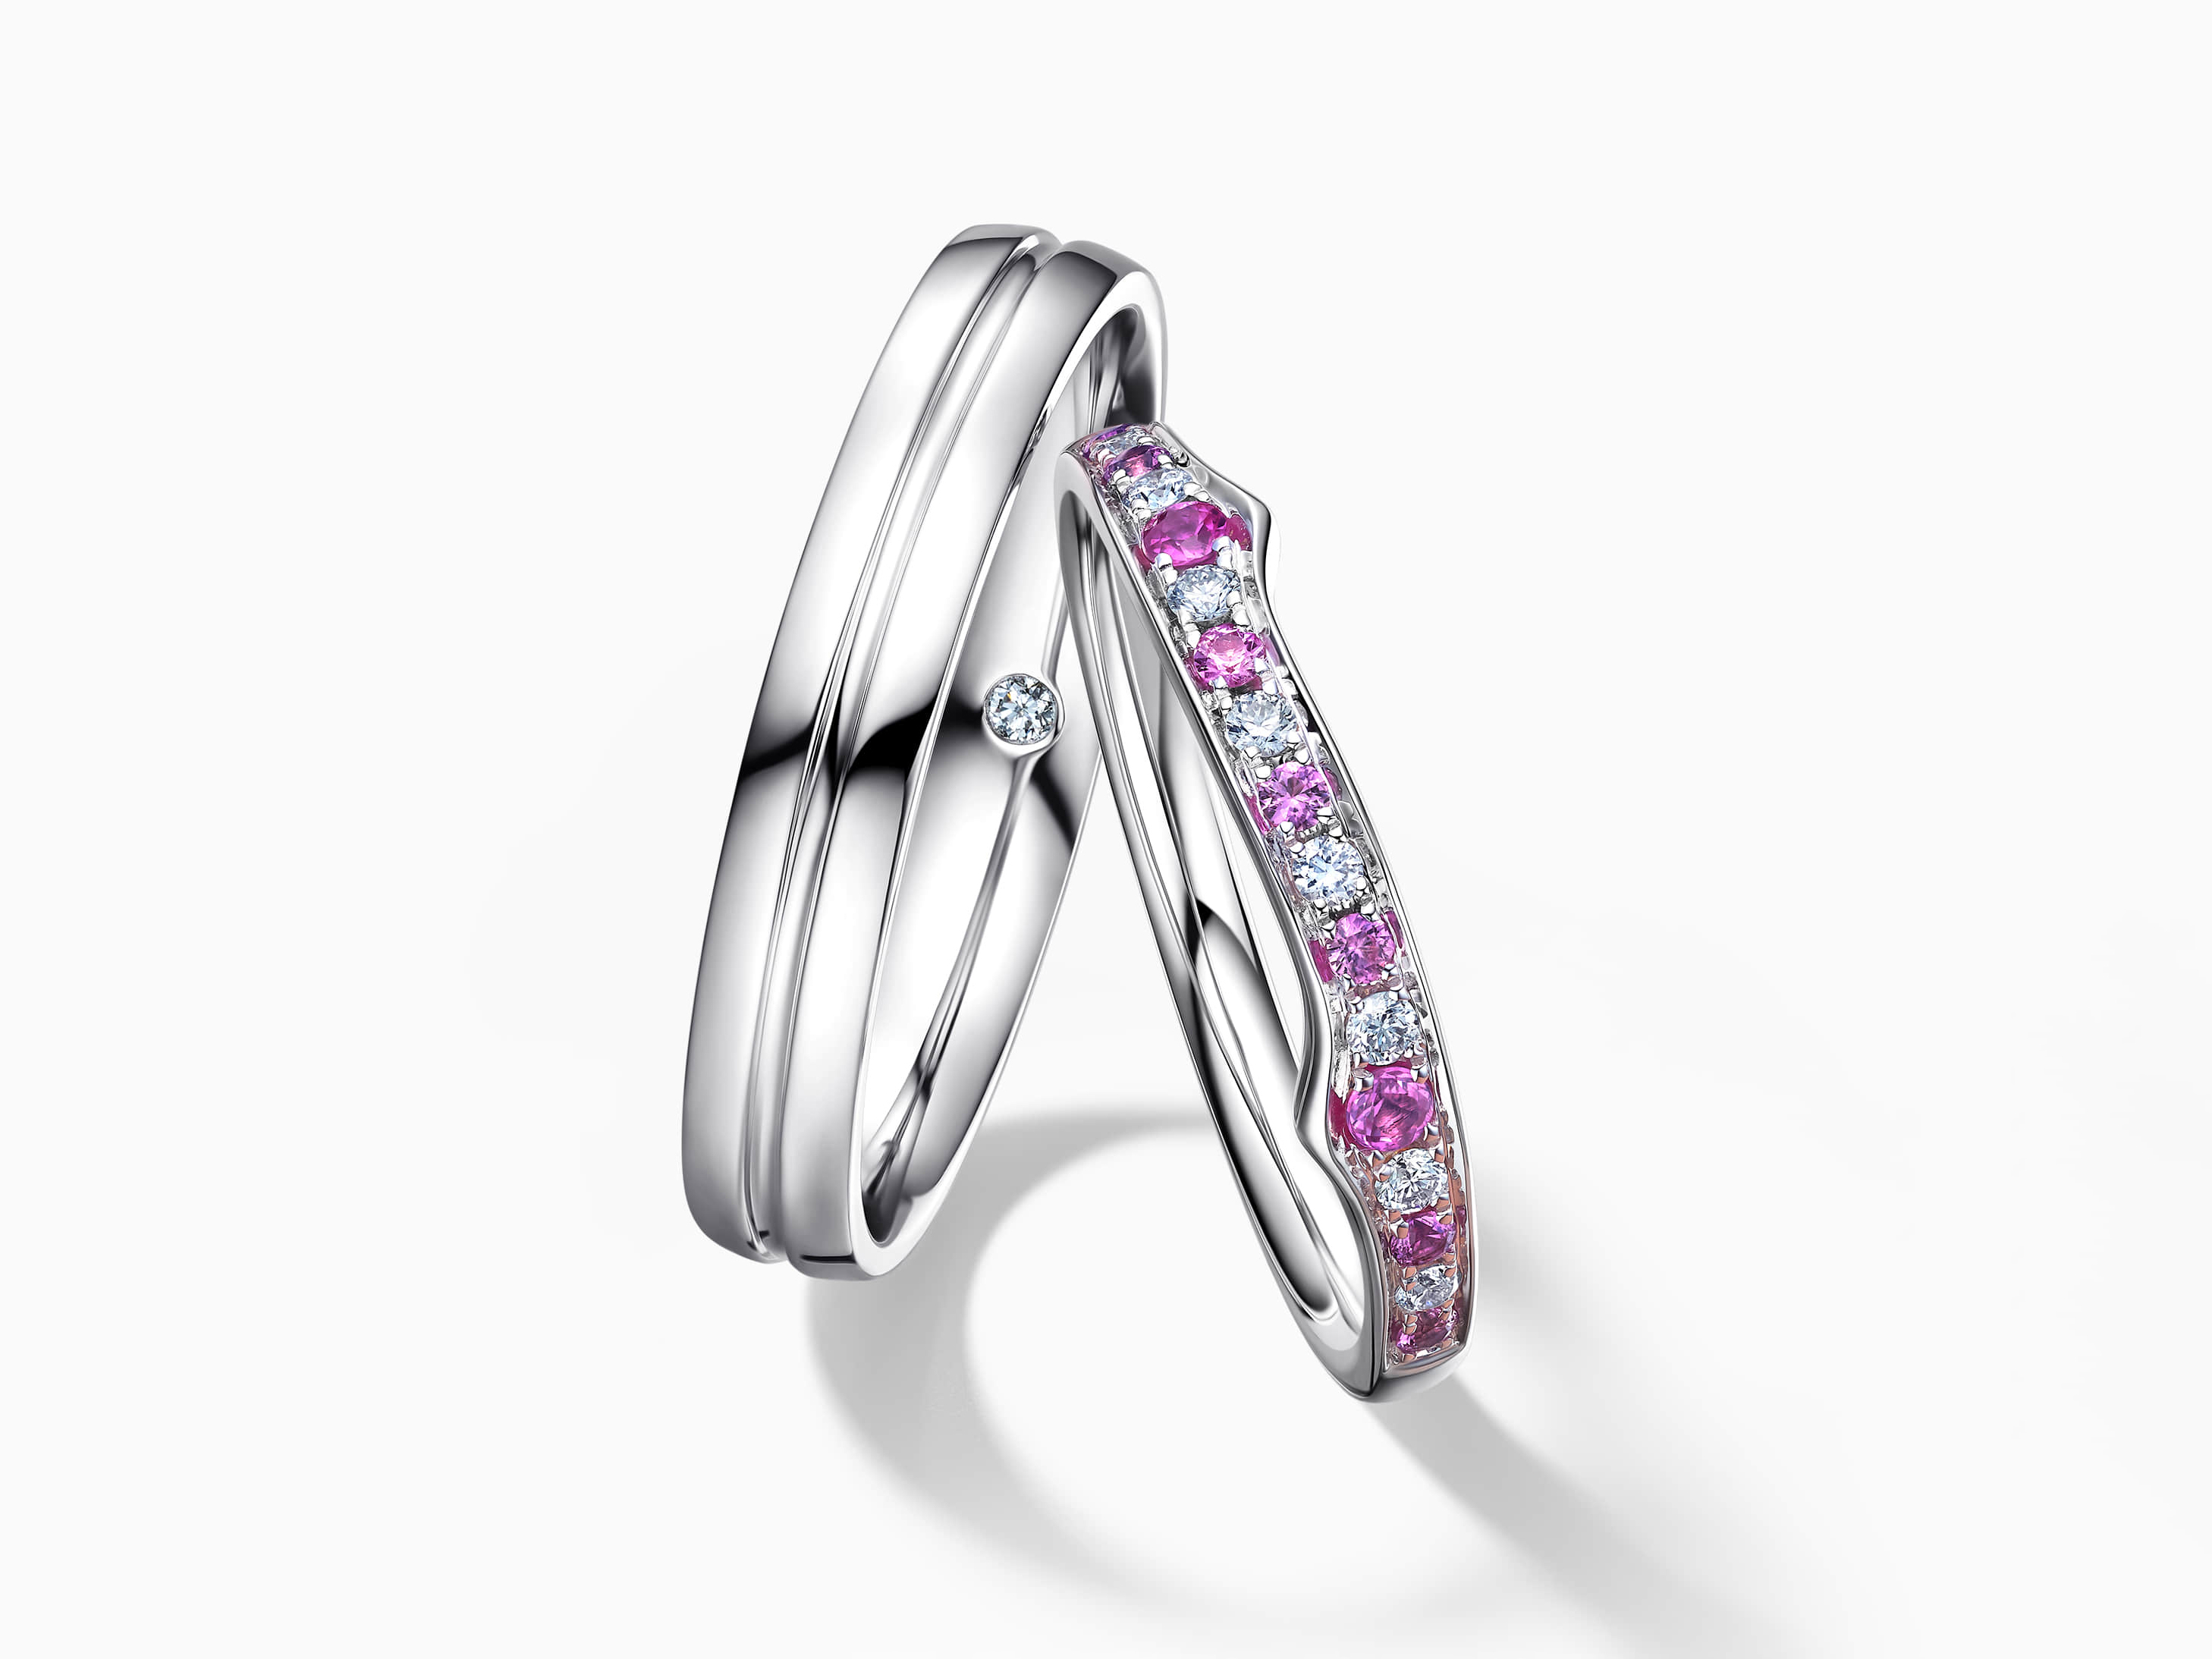 Darry Ring diamond wedding rings